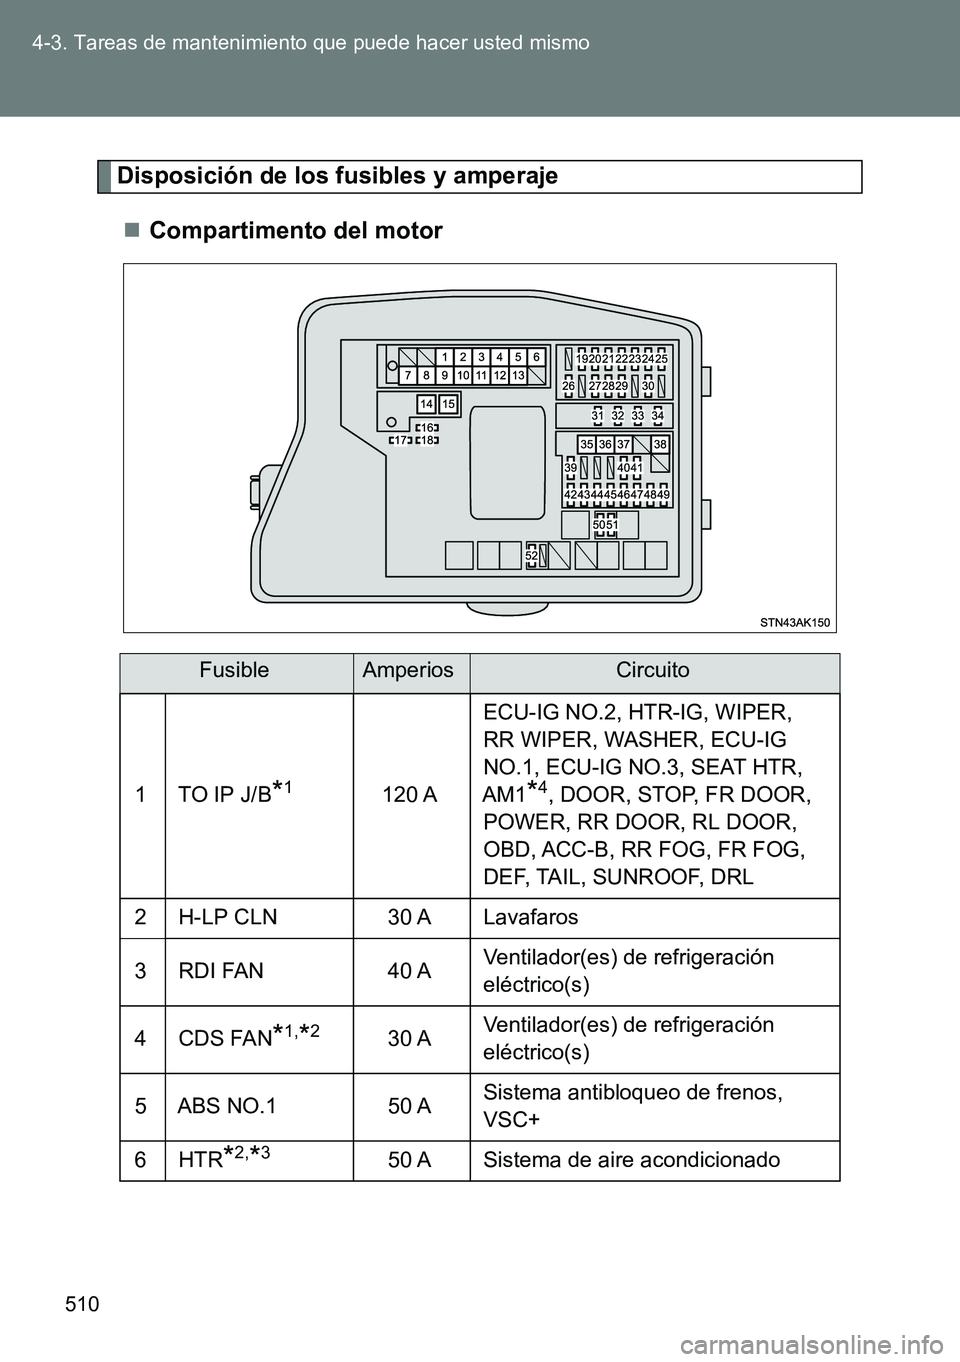 TOYOTA VERSO 2015  Manuale de Empleo (in Spanish) 510 4-3. Tareas de mantenimiento que puede hacer usted mismo
Disposición de los fusibles y amperaje
Compartimento del motor
FusibleAmperiosCircuito
1TO IP J/B*1120 AECU-IG NO.2, HTR-IG, WIPER, 
RR